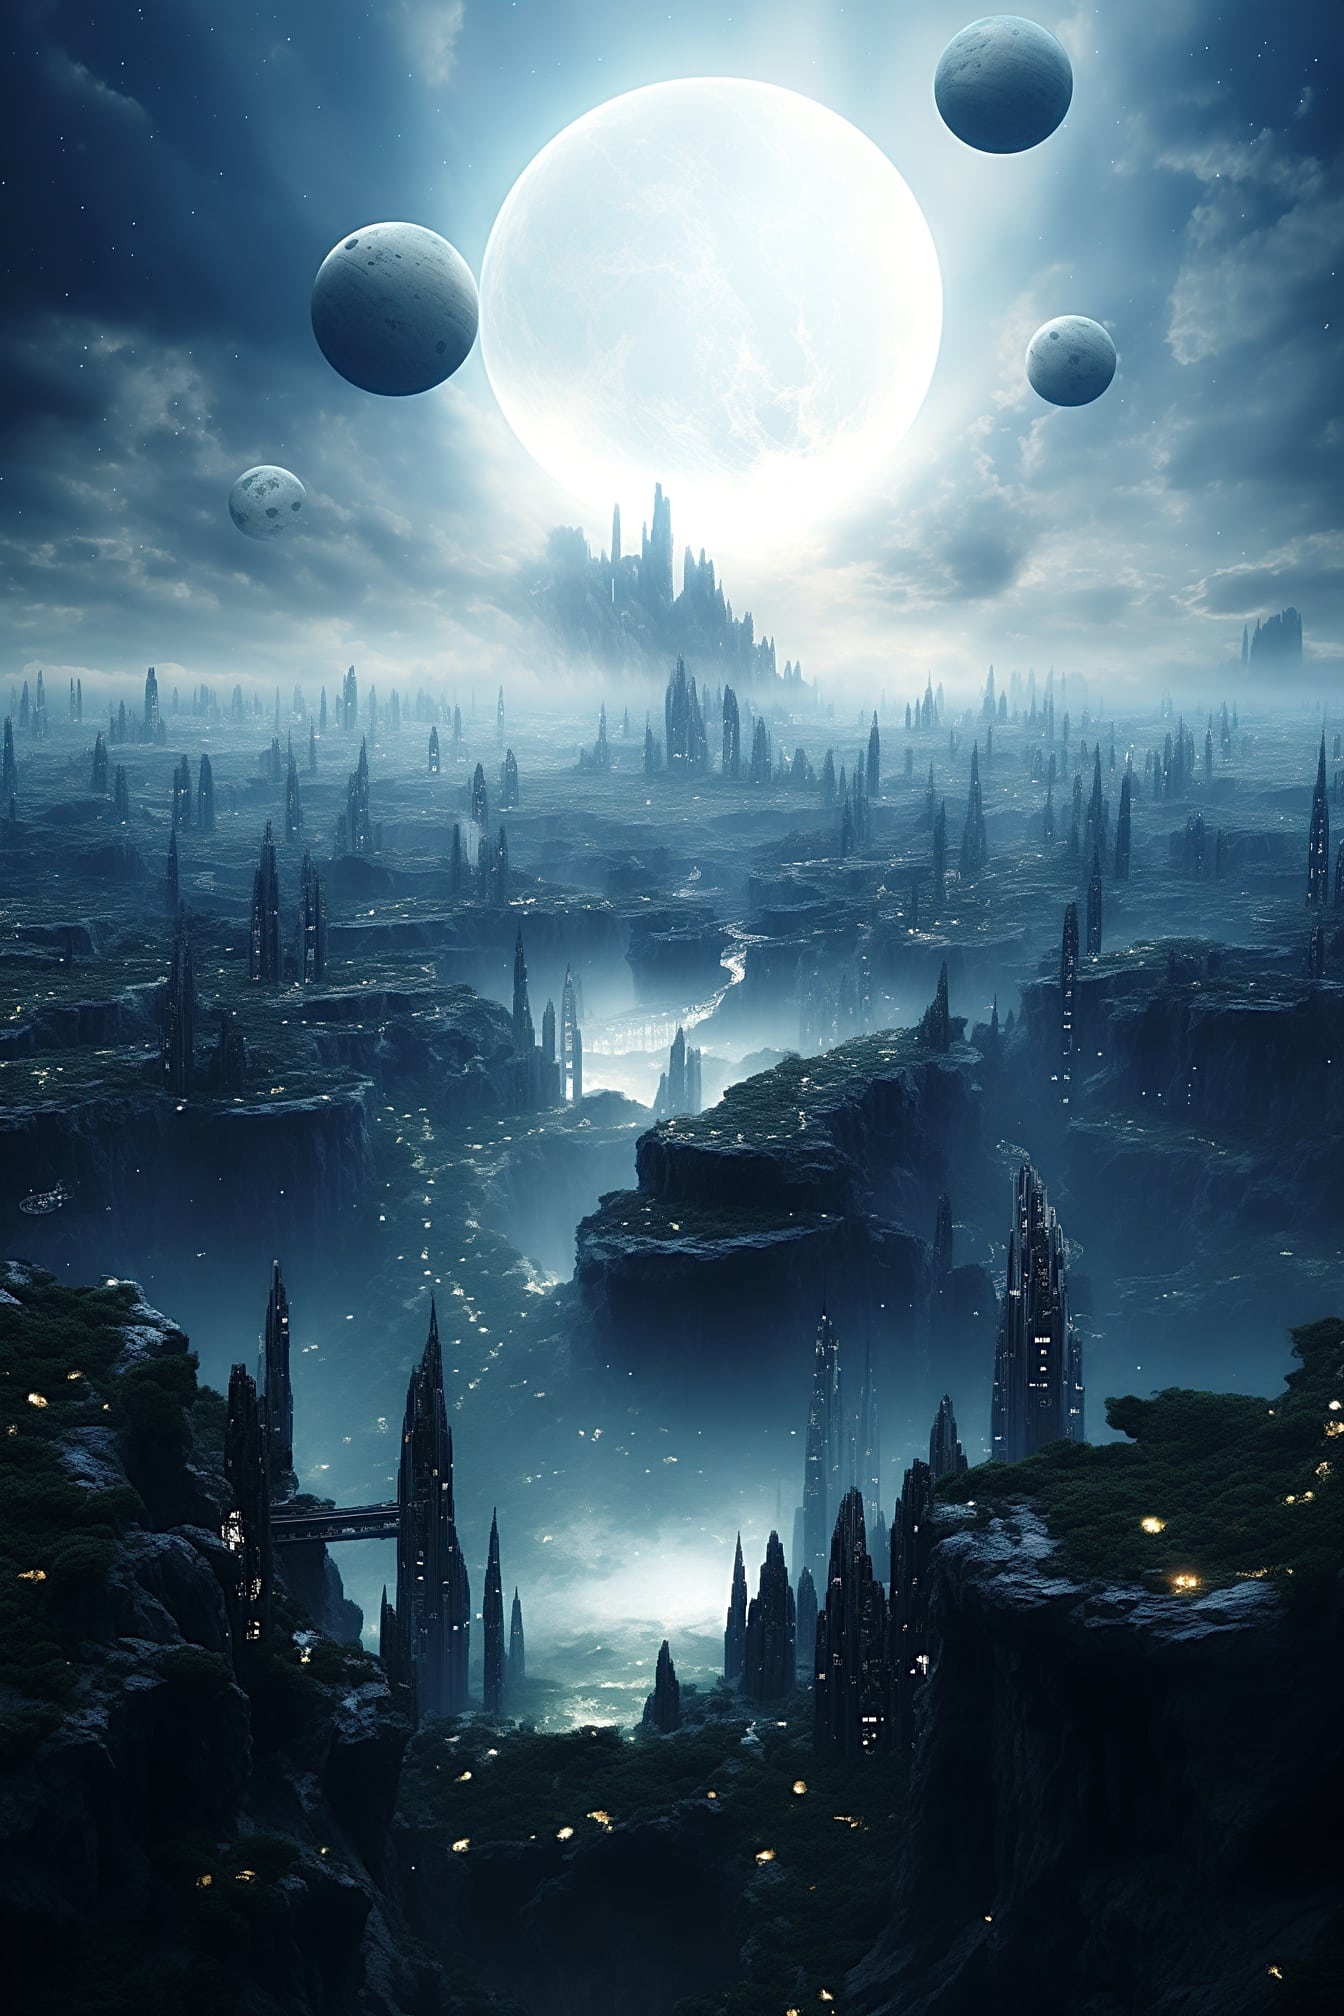 Grafică suprarealistă cu mulți sateliți care descriu o atmosferă științifico-fantastică captivantă deasupra orașului lunar